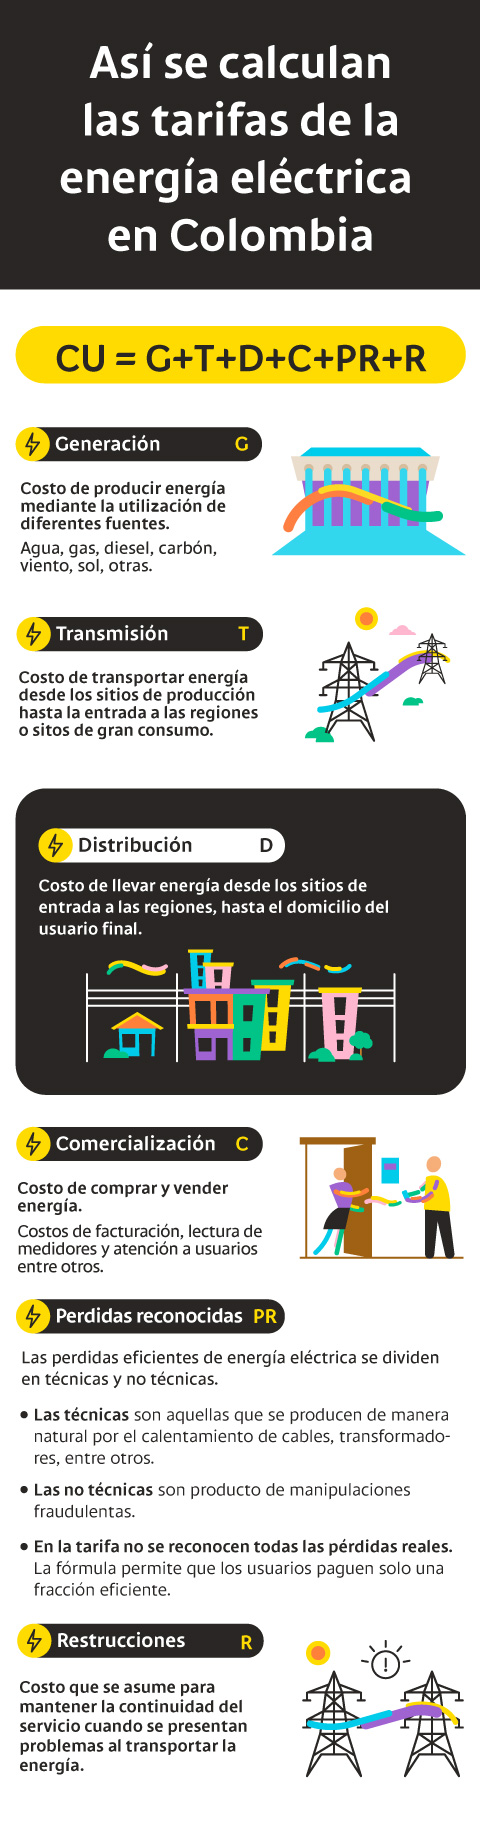 Así se calculan las tarifas de la energía eléctrica en Colombia